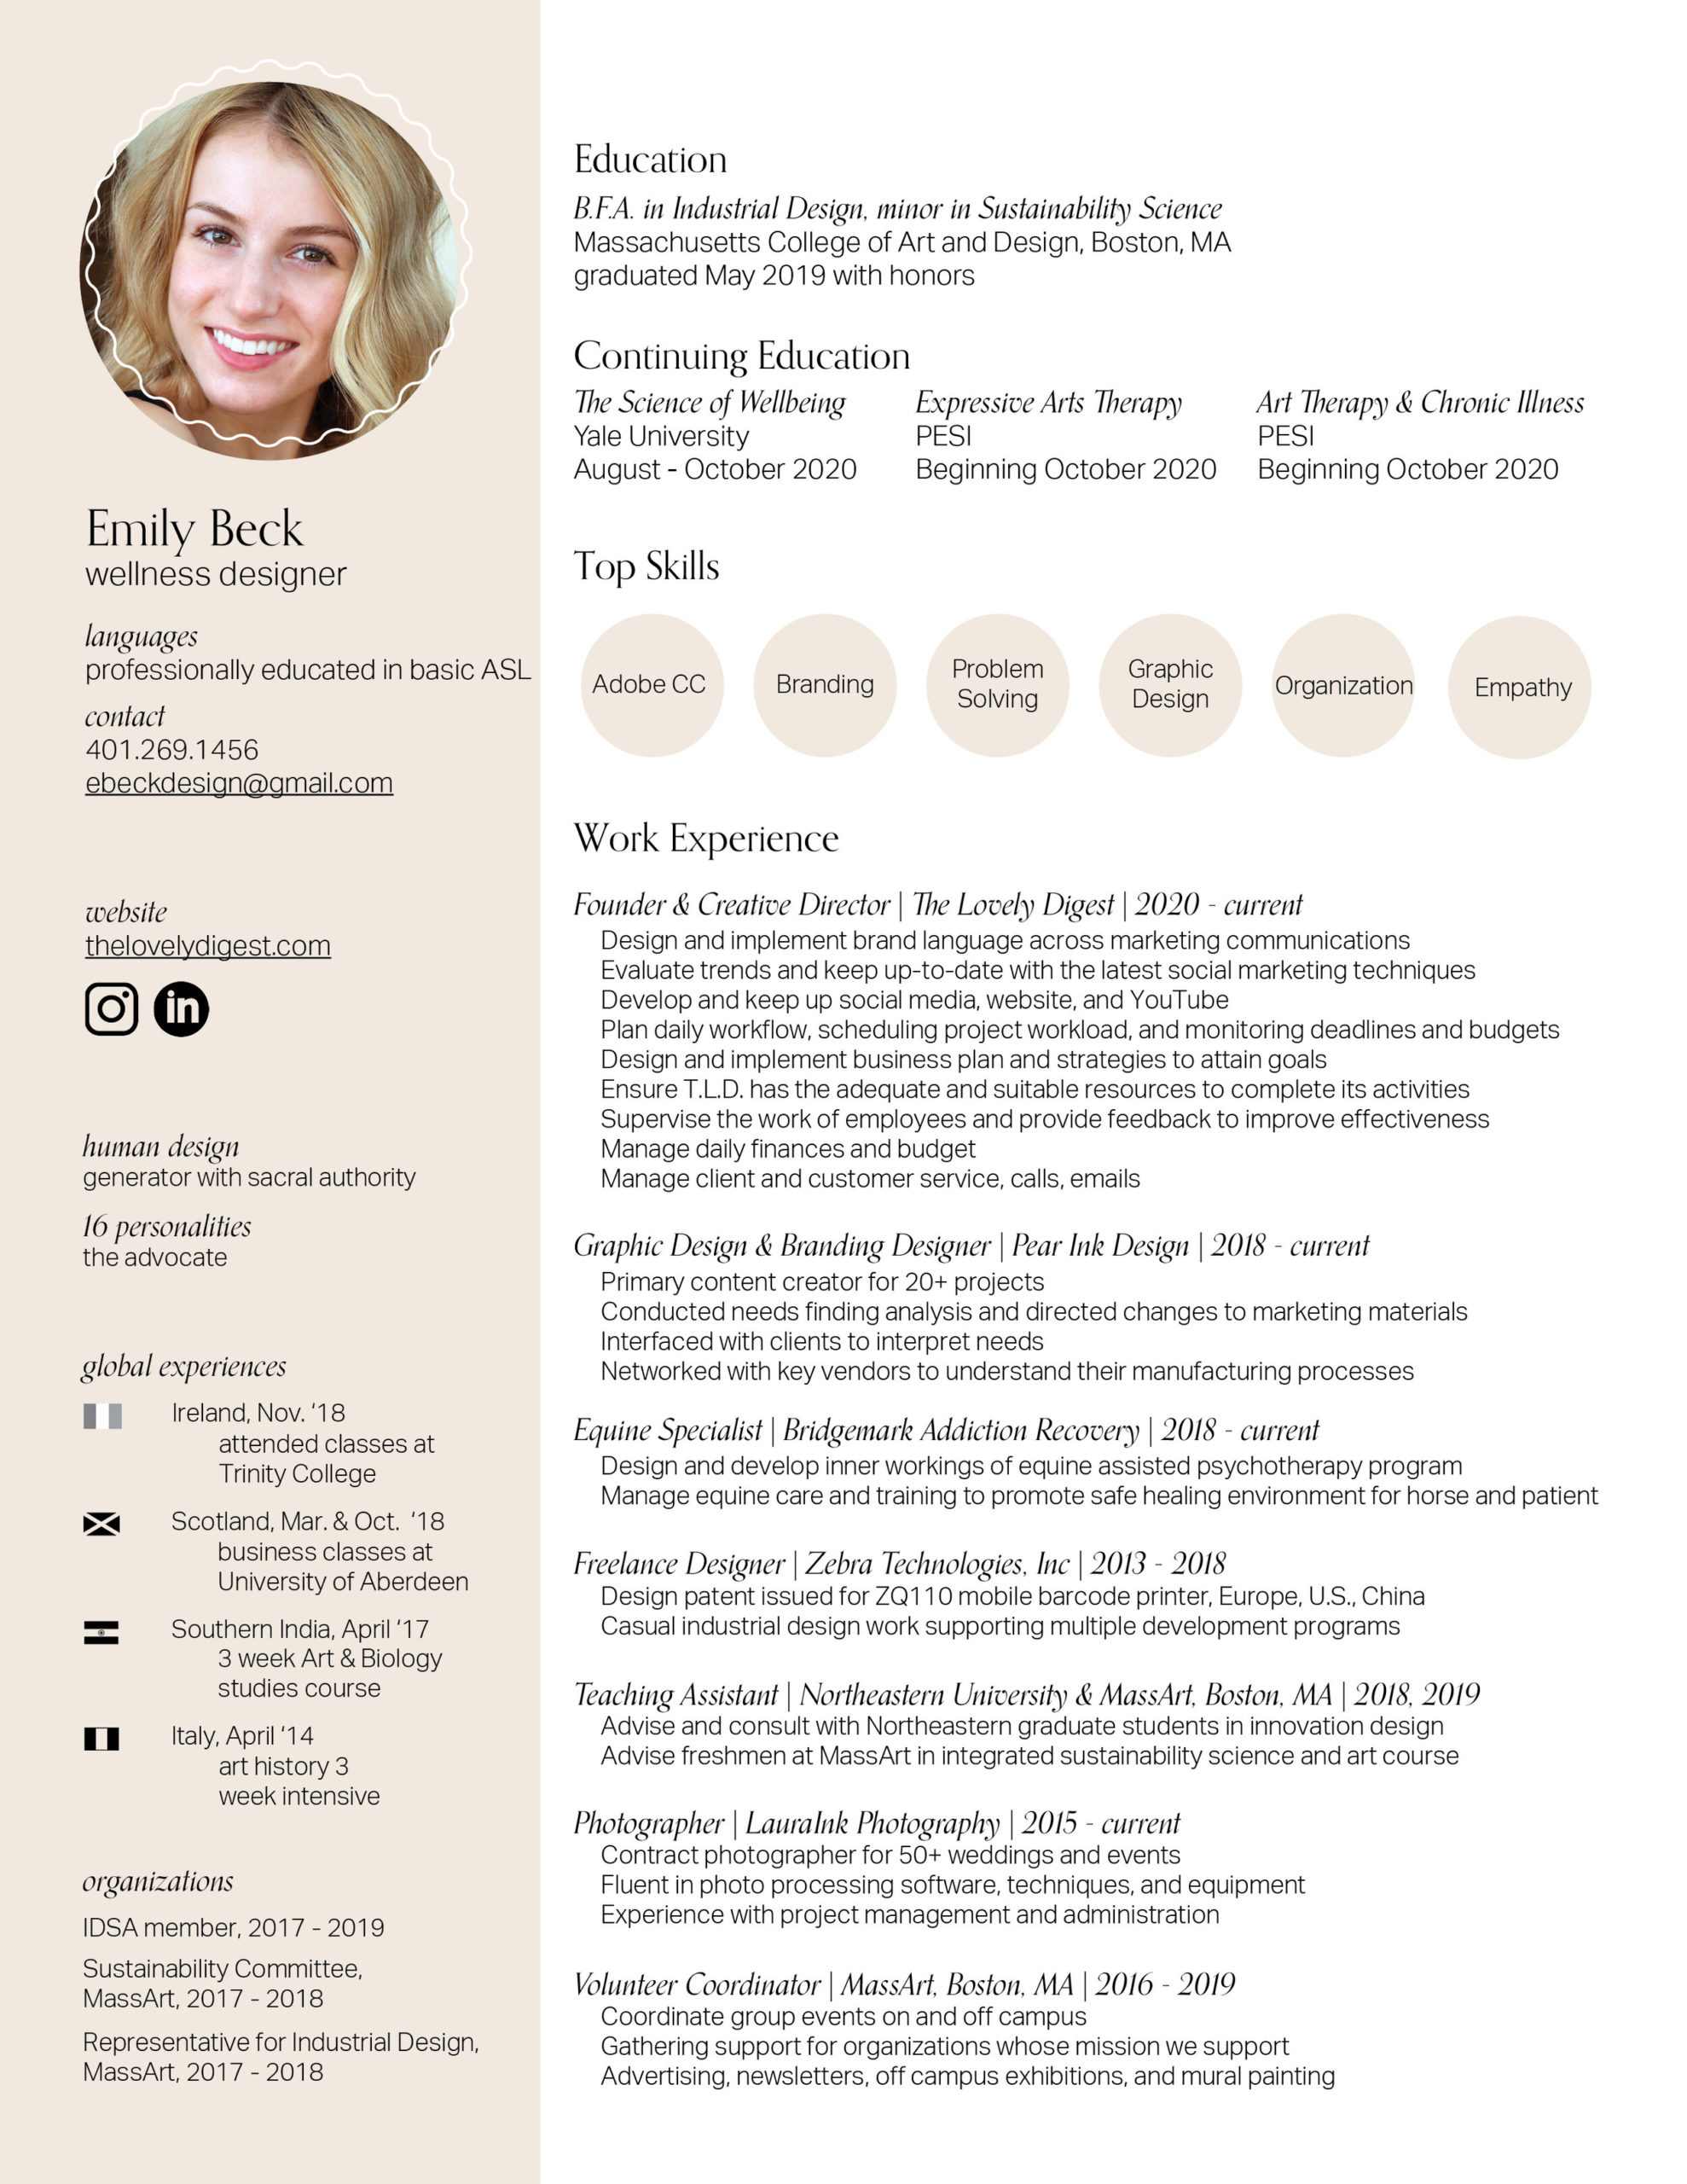 EmilyBeck_Resume2020_Online.jpg